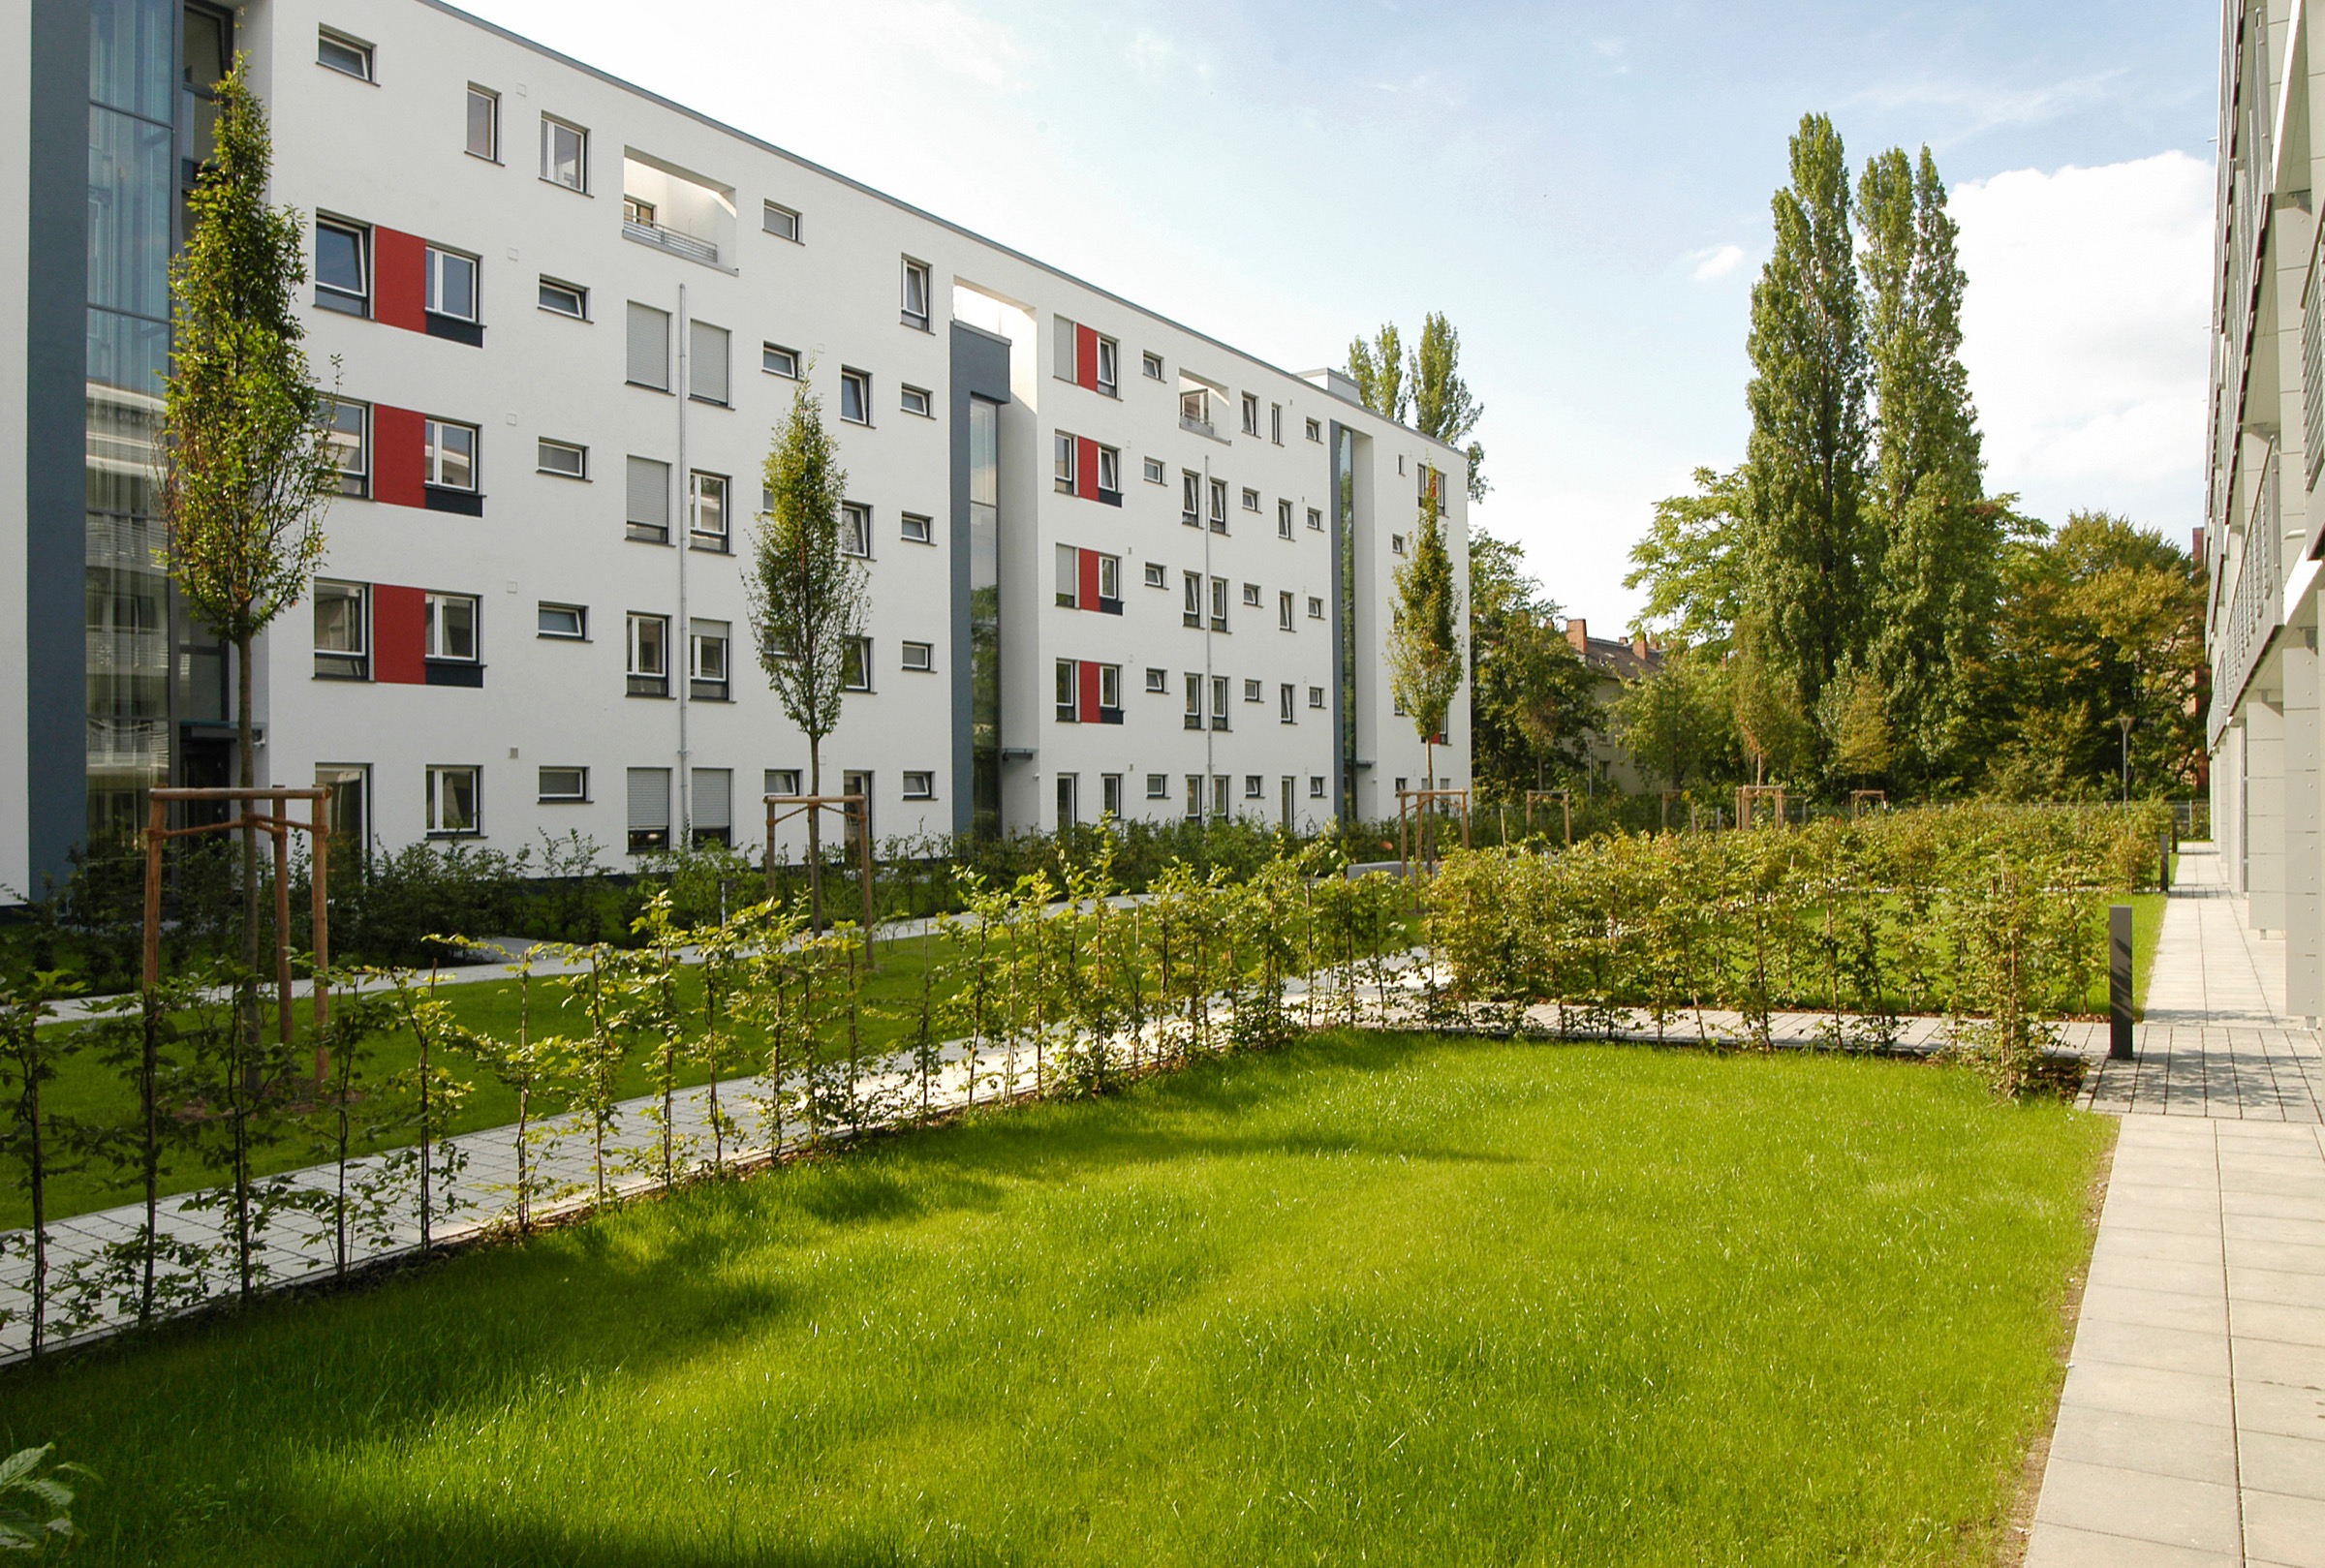 Großer moderner Wohngebäudekomplex mit frisch angelegter, gepflegter Grünflächer und junger Bäume davor